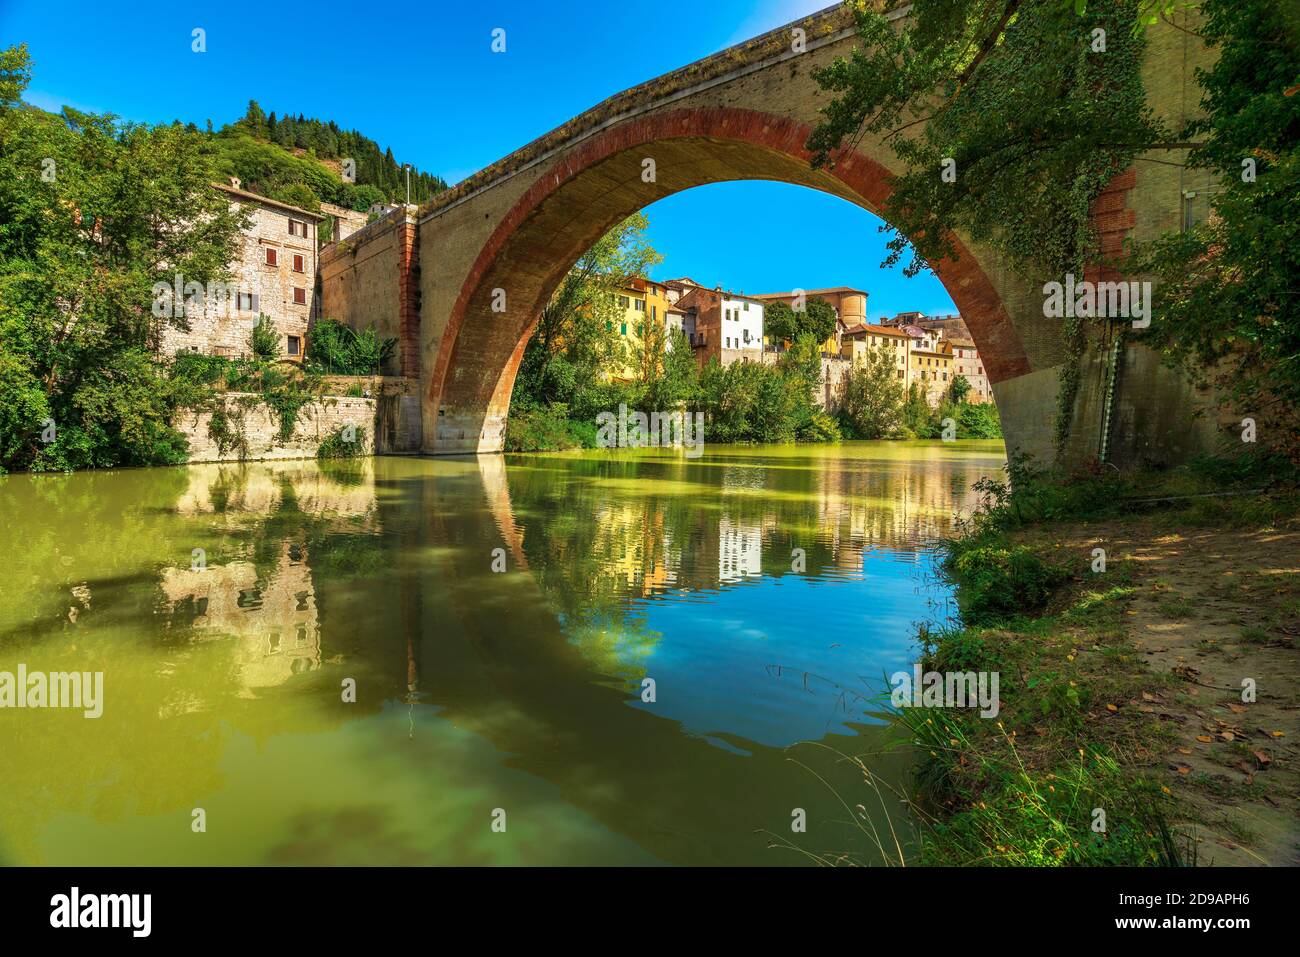 Ponte della Concordia oder Diocleziano, alte römische Brücke über den Fluss Metauro. Fossombrone, Provinz Pesaro und Urbino, Marken, Italien, Europa. Stockfoto